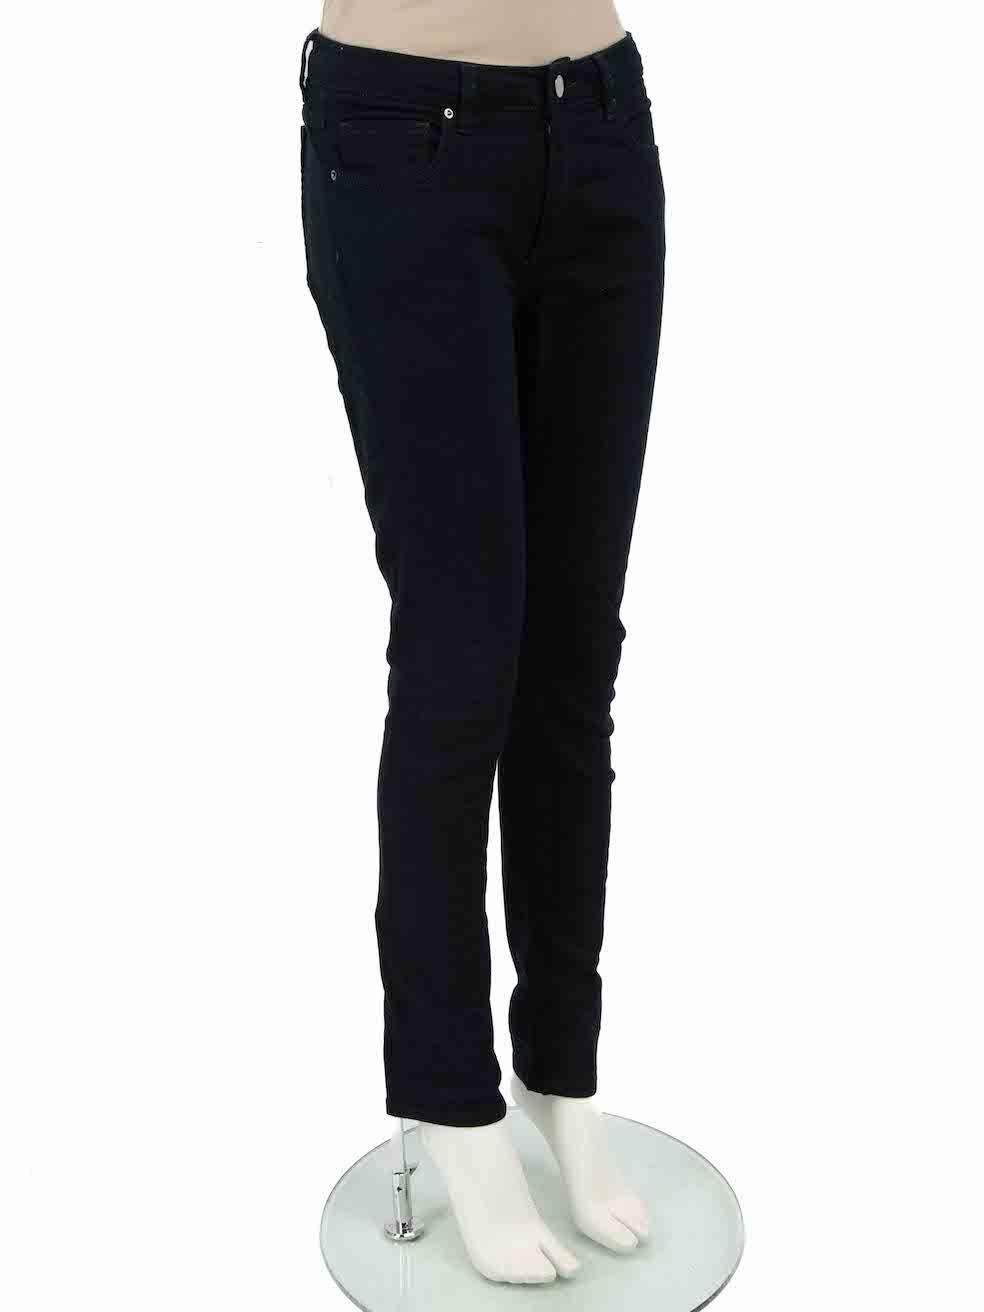 CONDIT ist sehr gut. Die Jeans weisen nur minimale Abnutzungserscheinungen auf. Minimale Abnutzungserscheinungen am Bundfutter und leichte Pillingbildung bei dieser gebrauchten Victoria Beckham Jeans Designer-Wiederverkaufsware.
